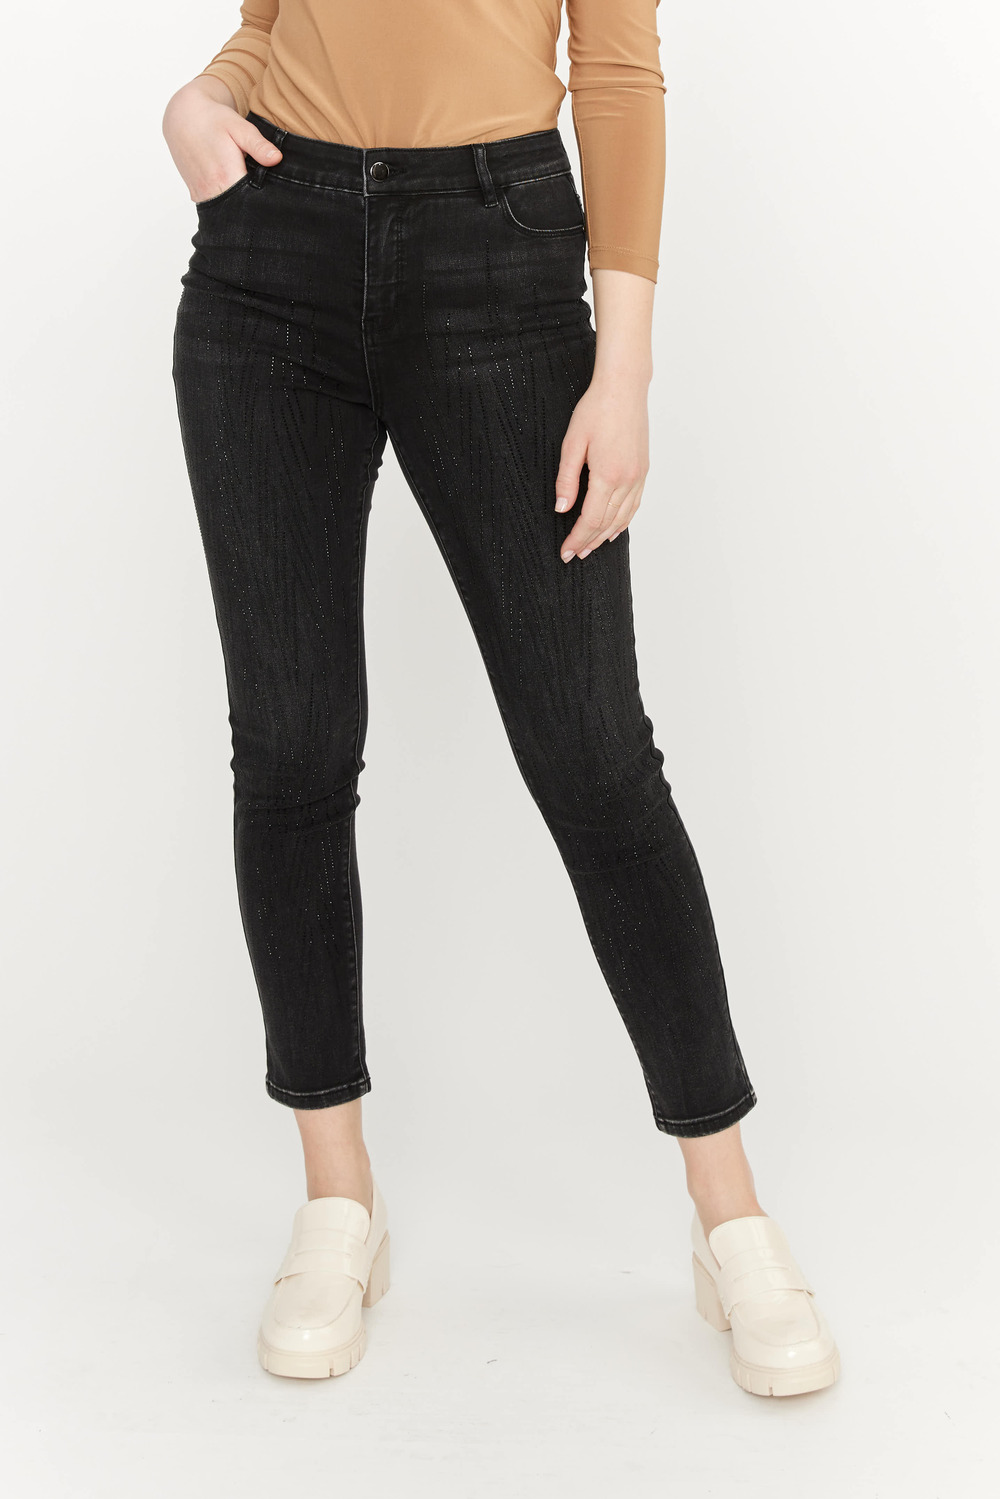 Beaded Slim Leg Jeans Style 233871U. Black